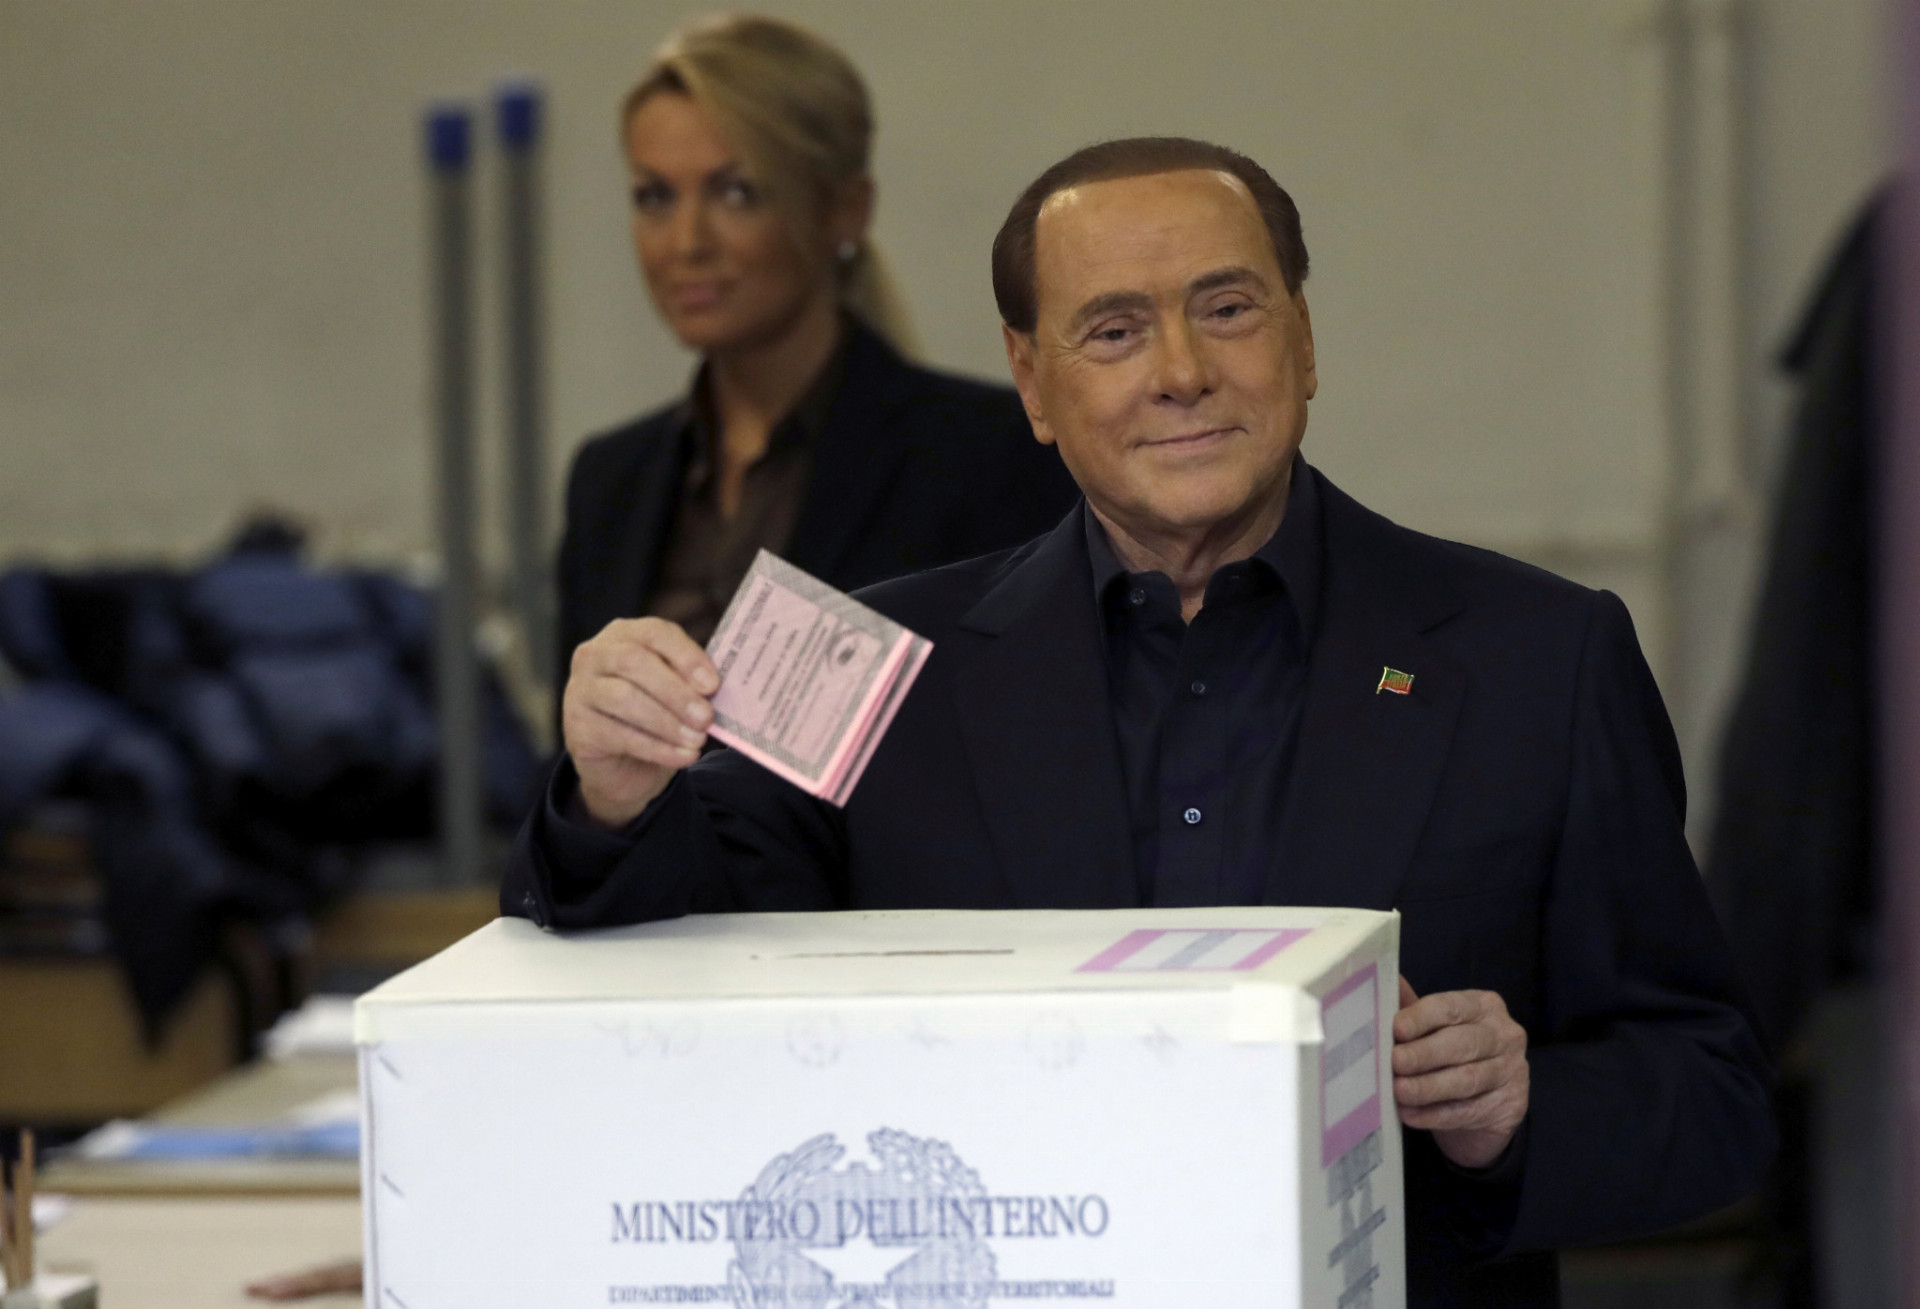 Taliani sa rozhodovali, či budú mať stabilnejší politický systém s väčšími právomocami pre centrálnu vládu. Volili aj premiér Matteo Renzi a bývalý predseda vlády Silvio Berlusconi.